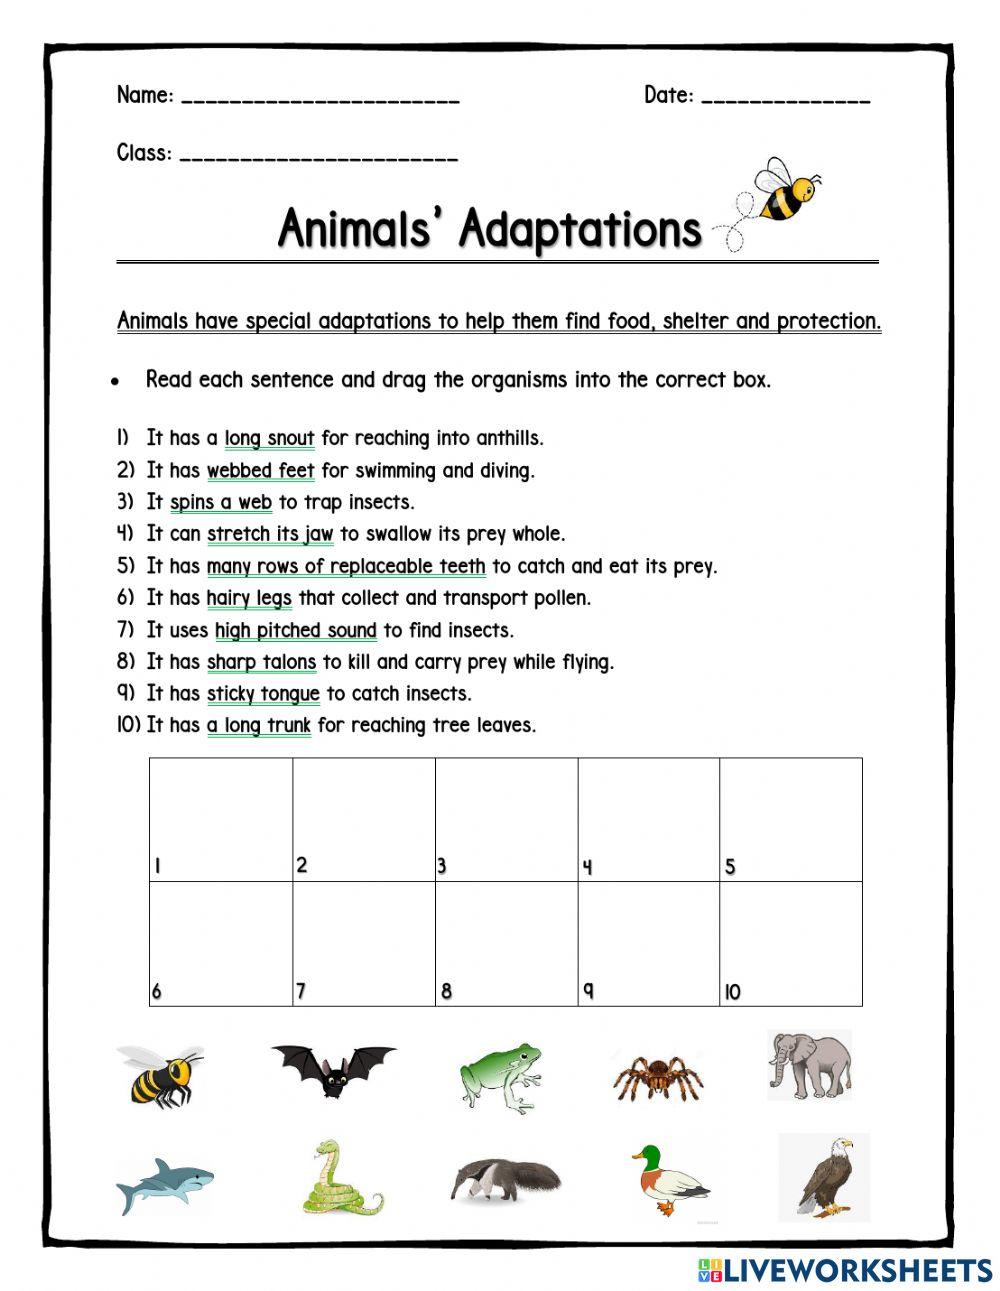 Adaptations of Animals